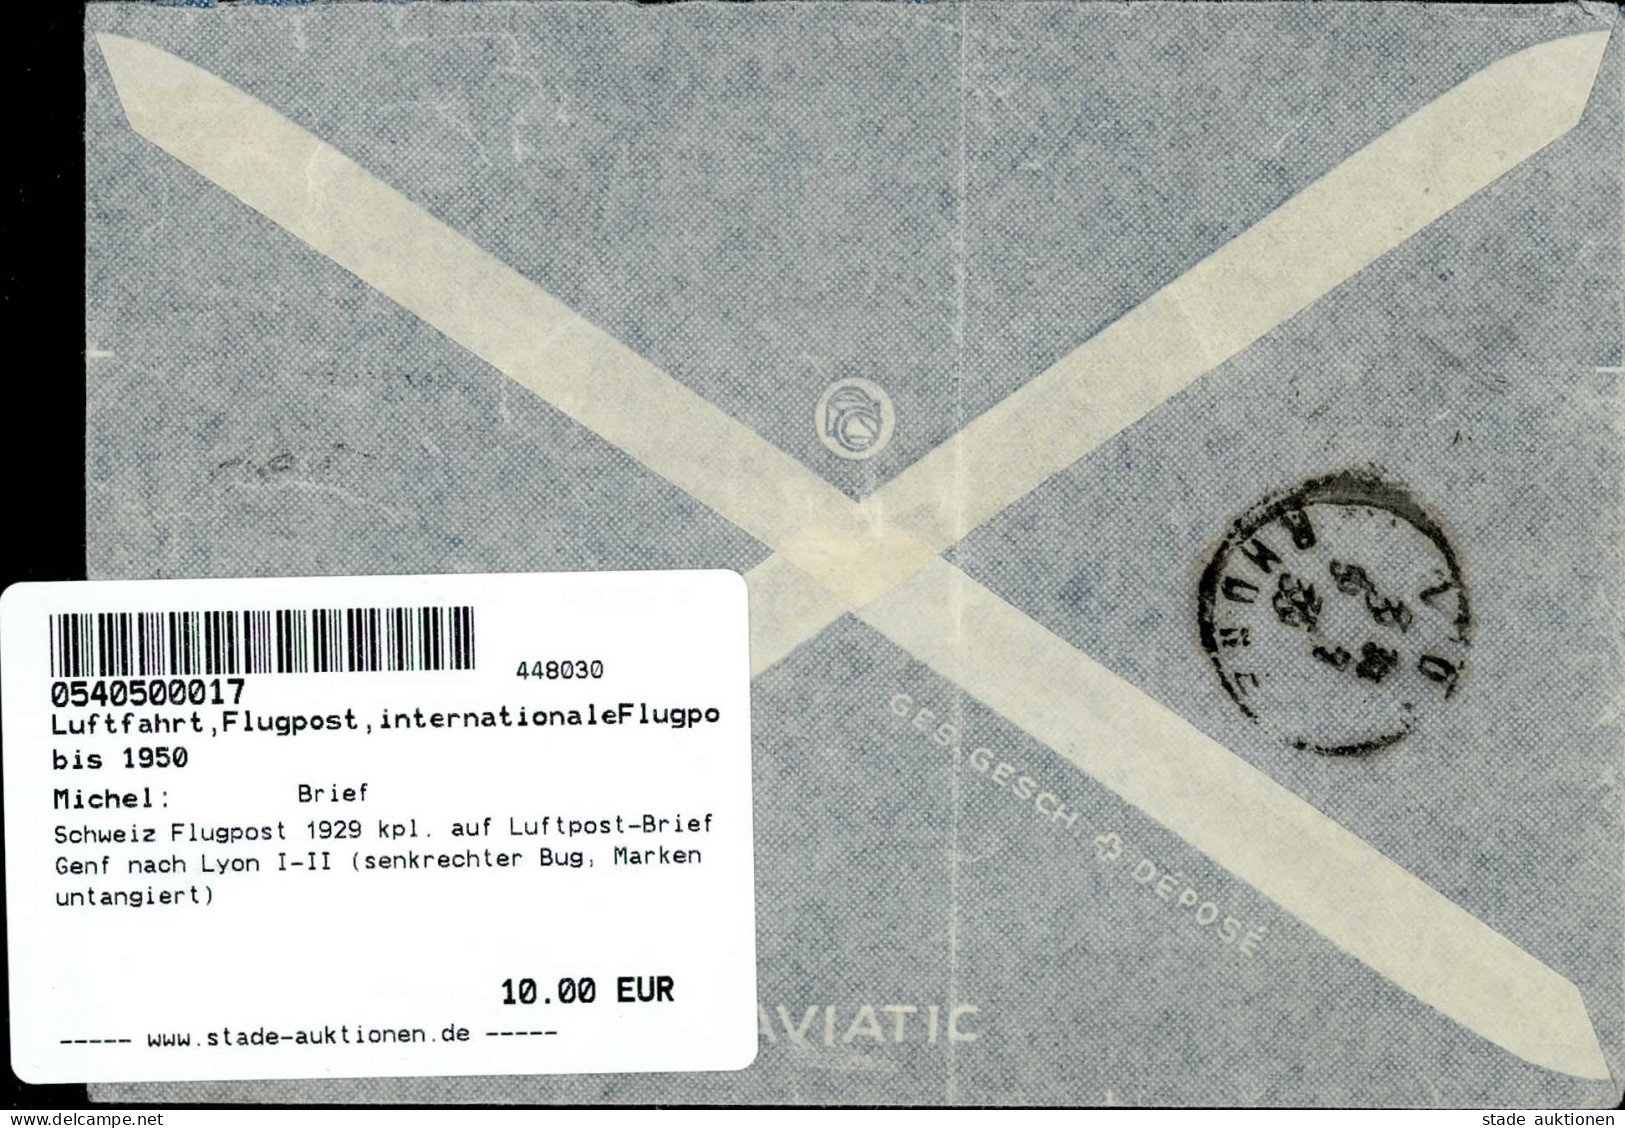 Schweiz Flugpost 1929 Kpl. Auf Luftpost-Brief Genf Nach Lyon I-II (senkrechter Bug, Marken Untangiert) - Weltkrieg 1914-18